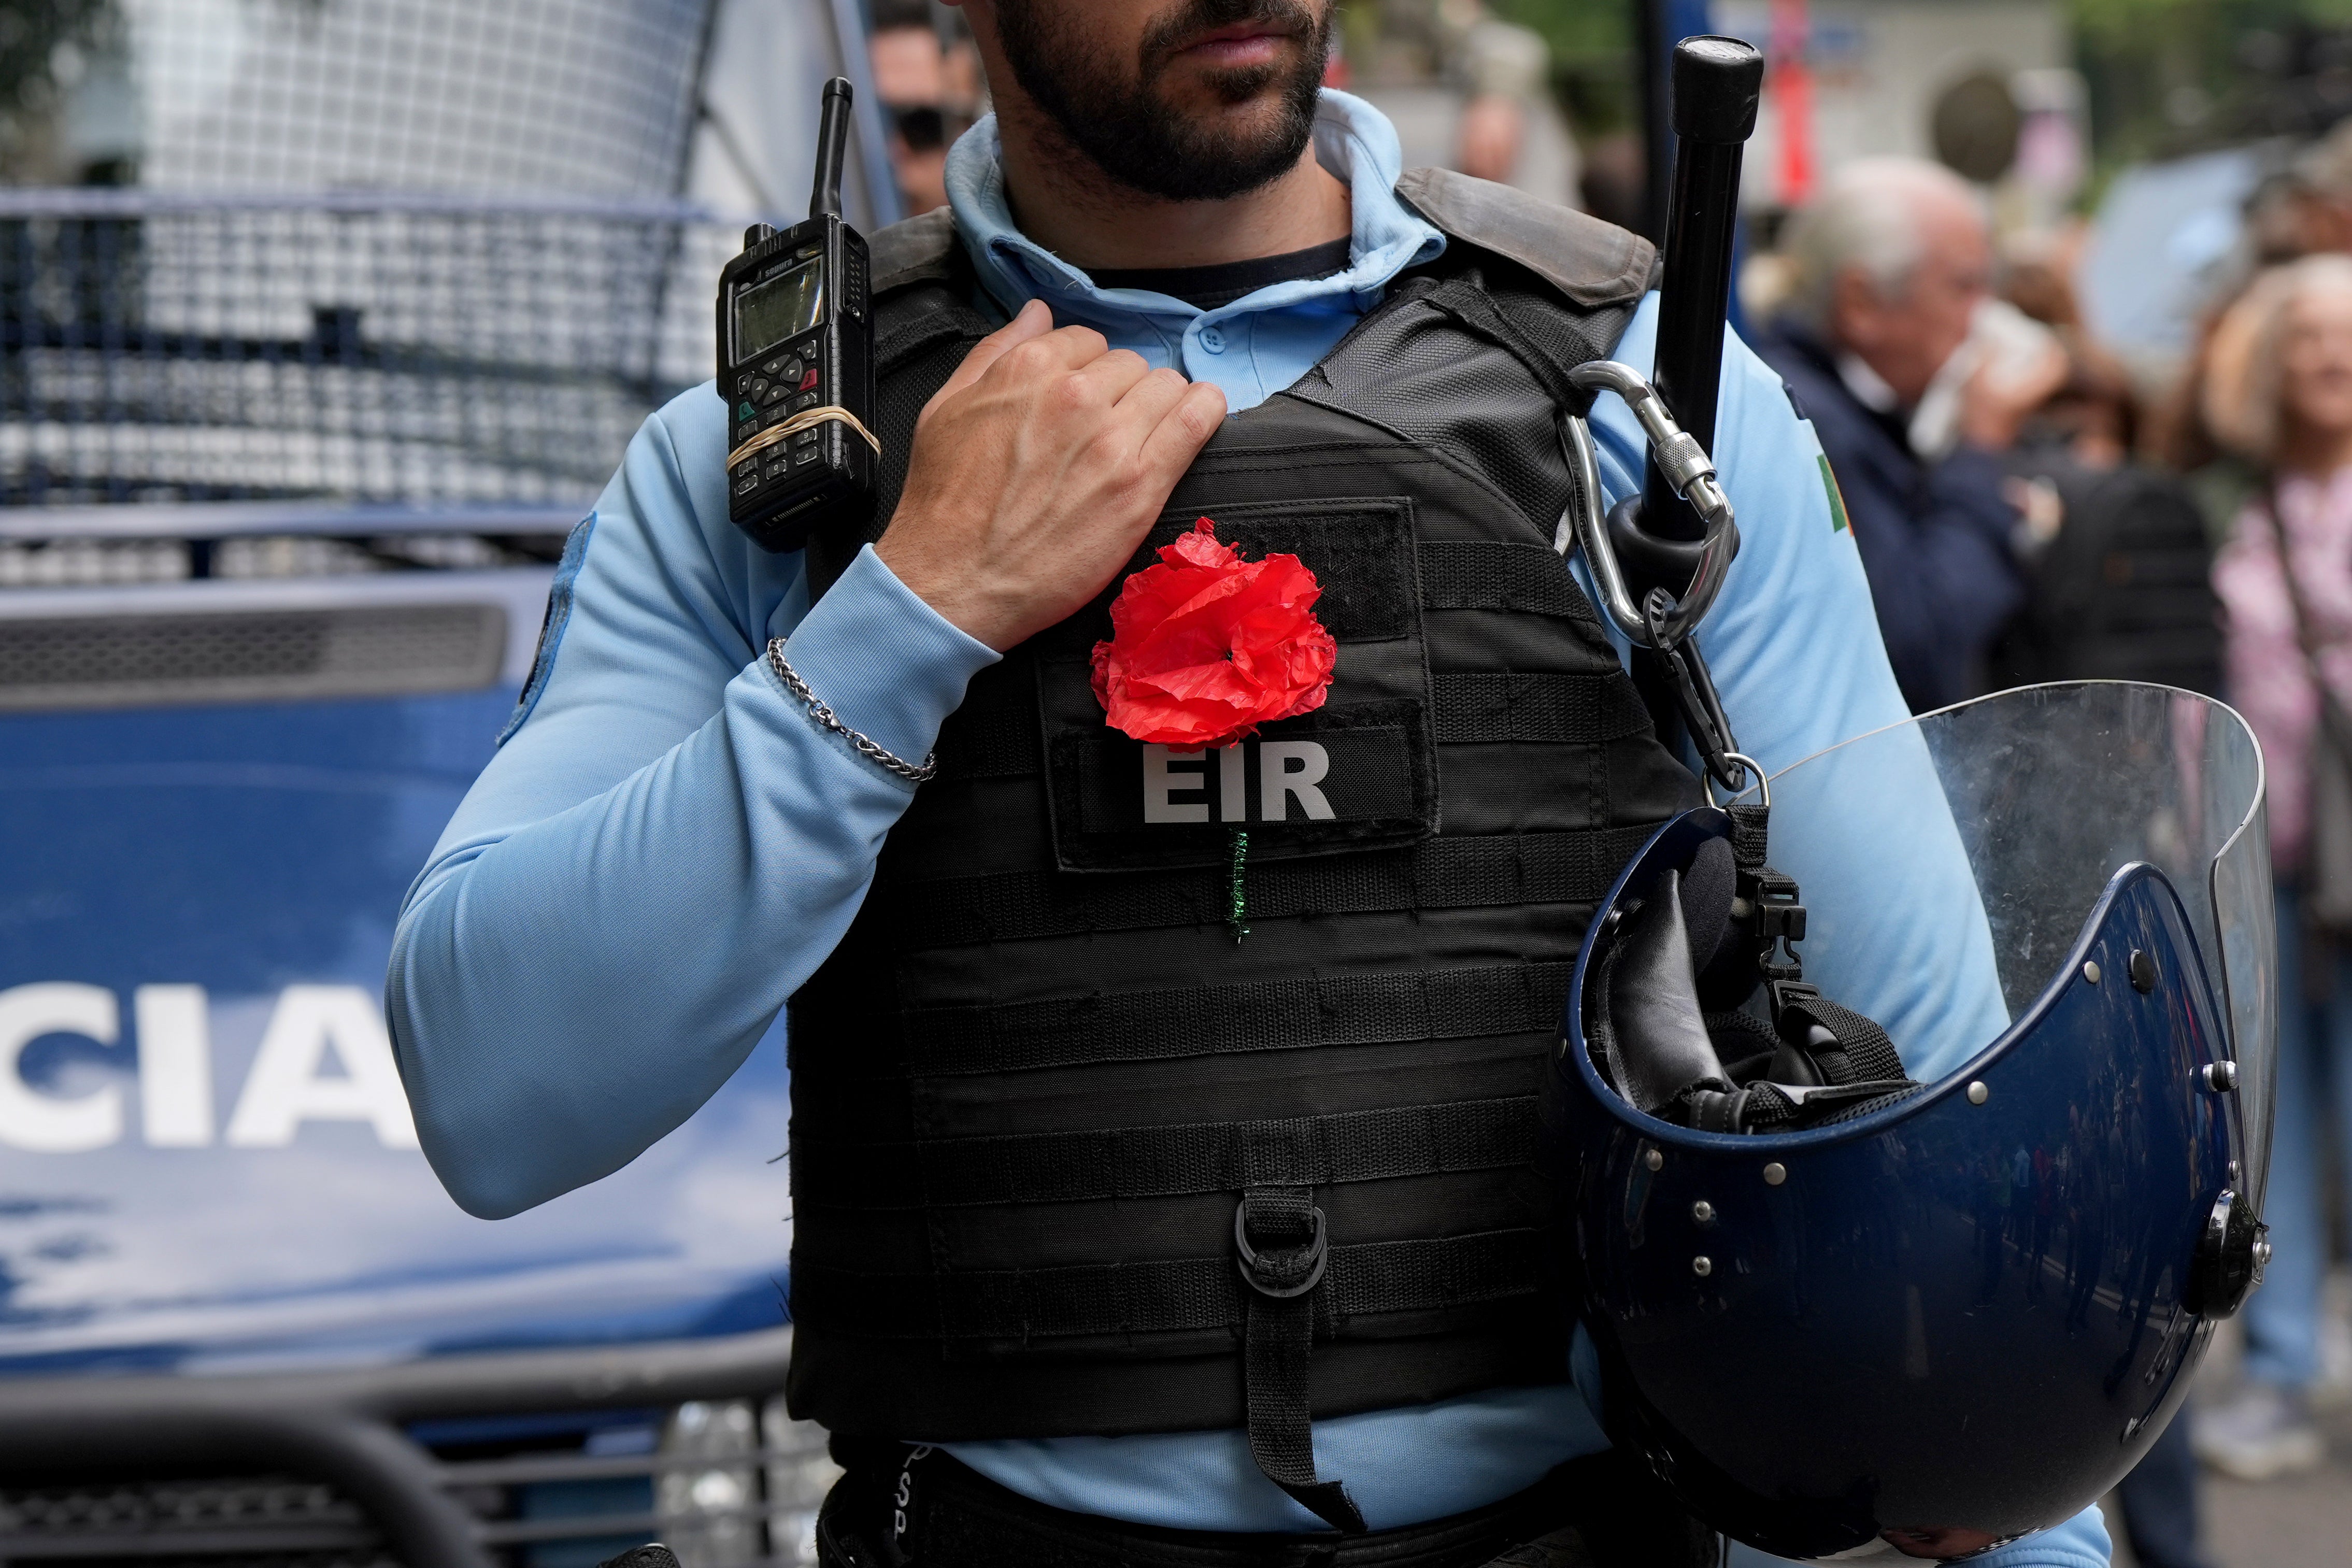 Police in Portugal